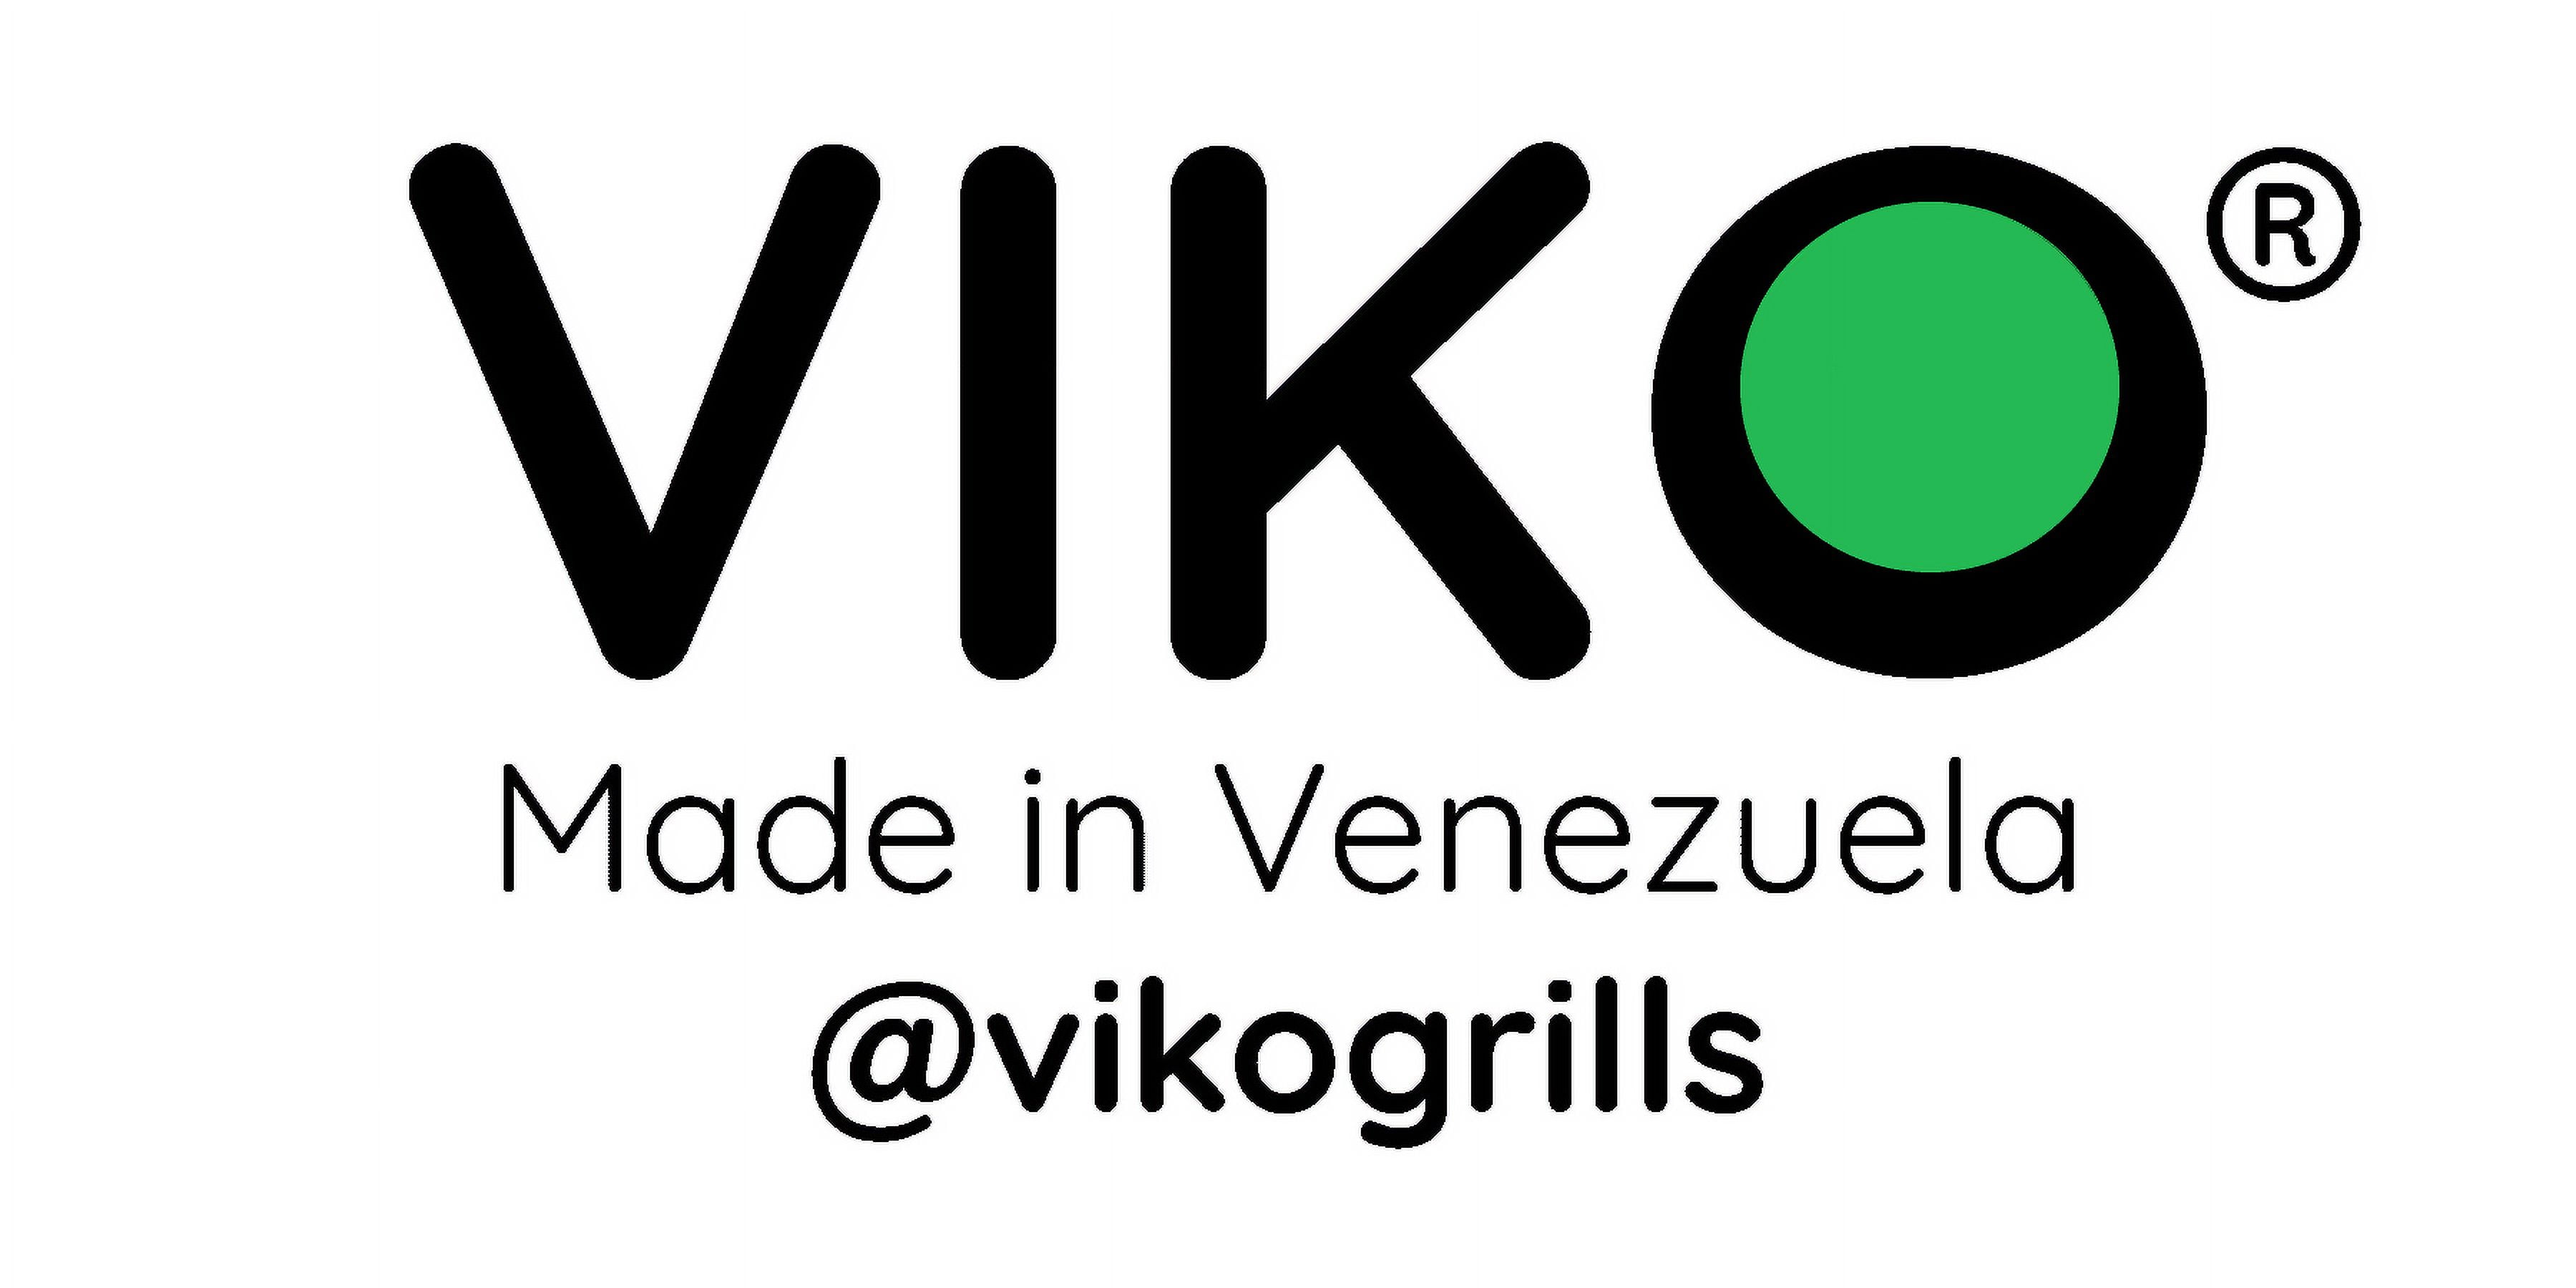 VIKO Budare Pro Grill arepas precurado 26cm 10.2 Griddle Hecho en Venezuela